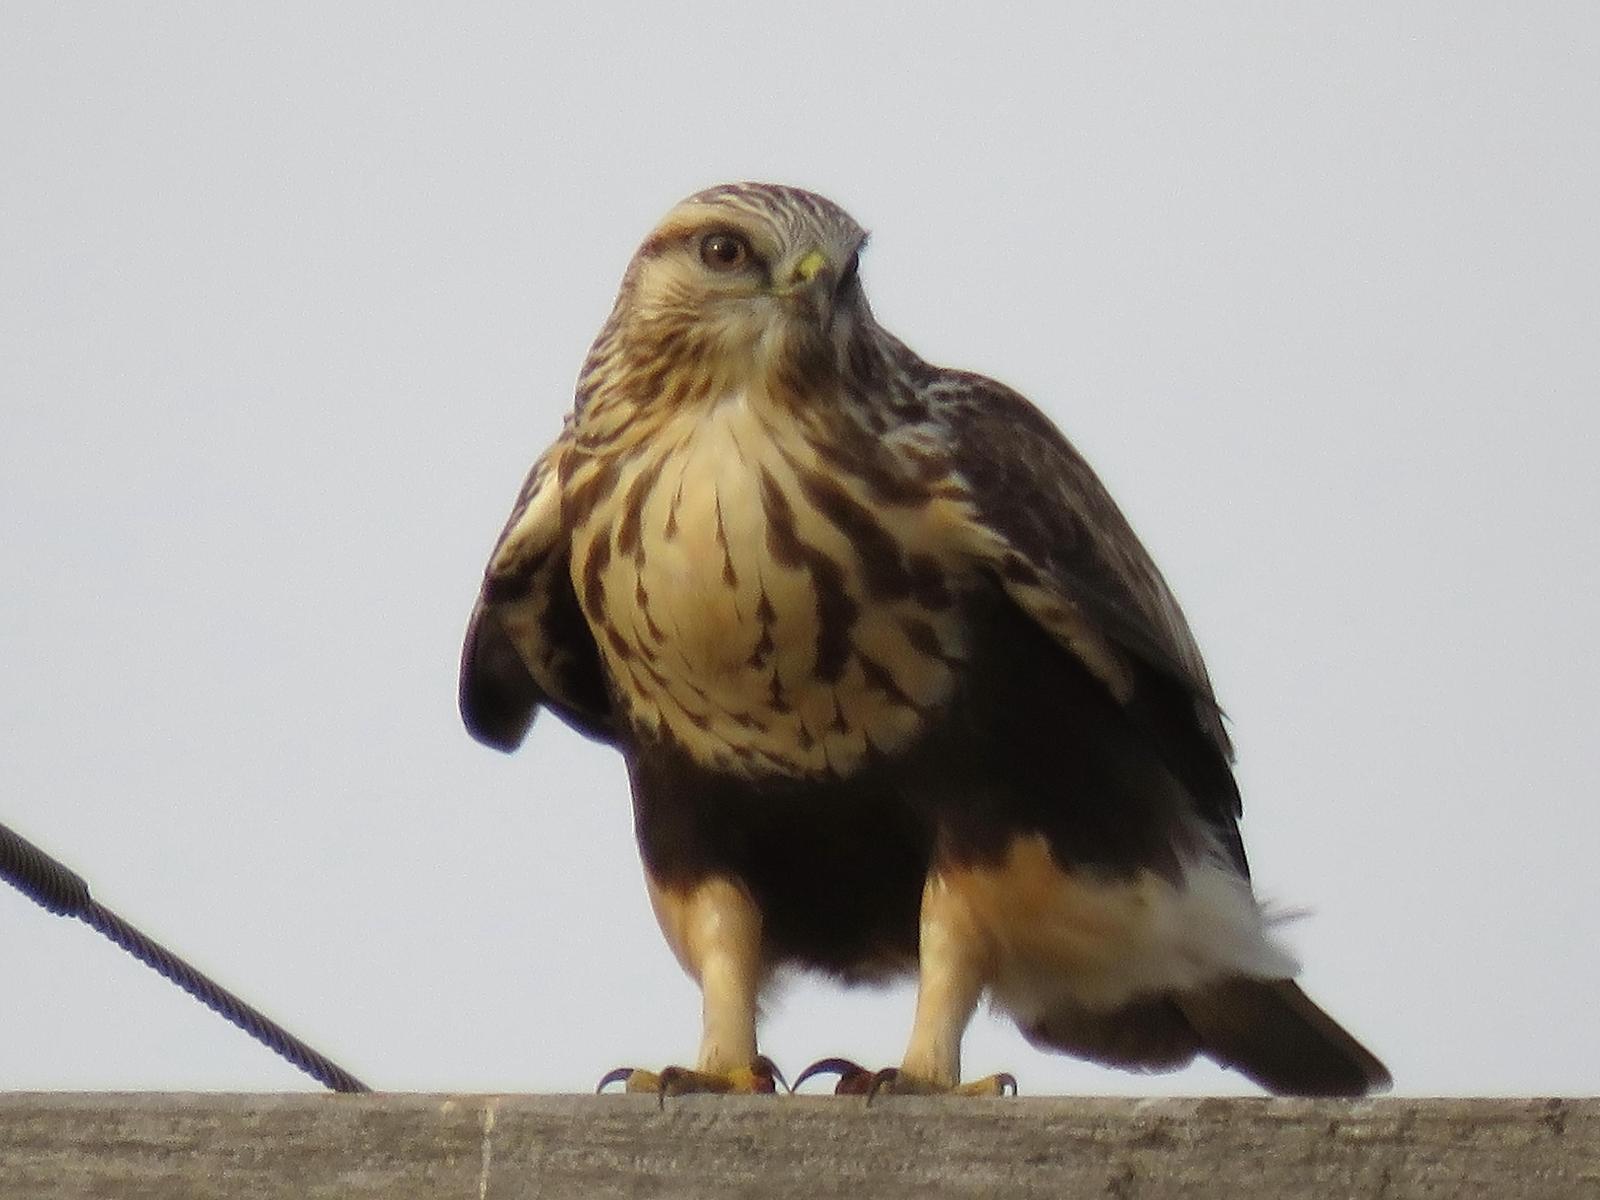 Rough-legged Hawk Photo by Kent Jensen